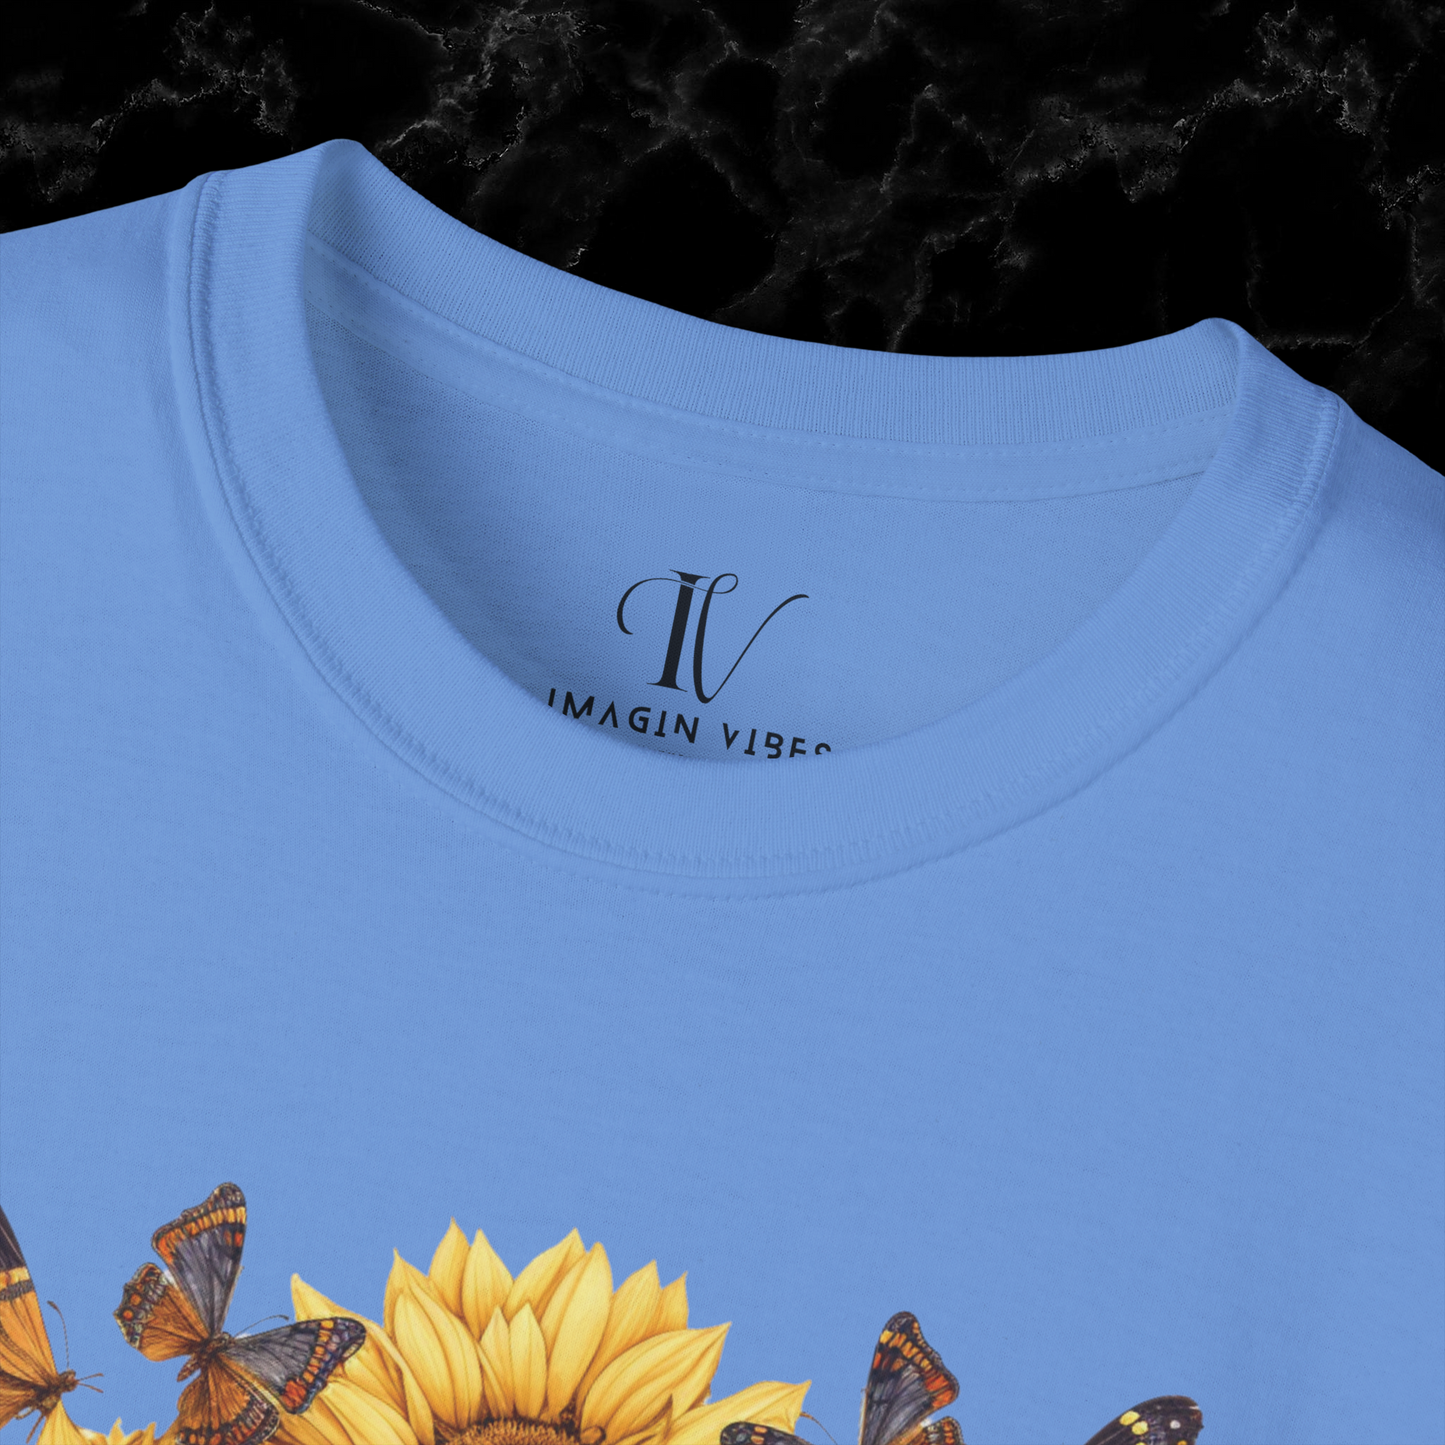 Sunflower Shirt - A Floral Tee, Garden Shirt, and Women's Fall Shirt with Nature-Inspired Design T-Shirt   